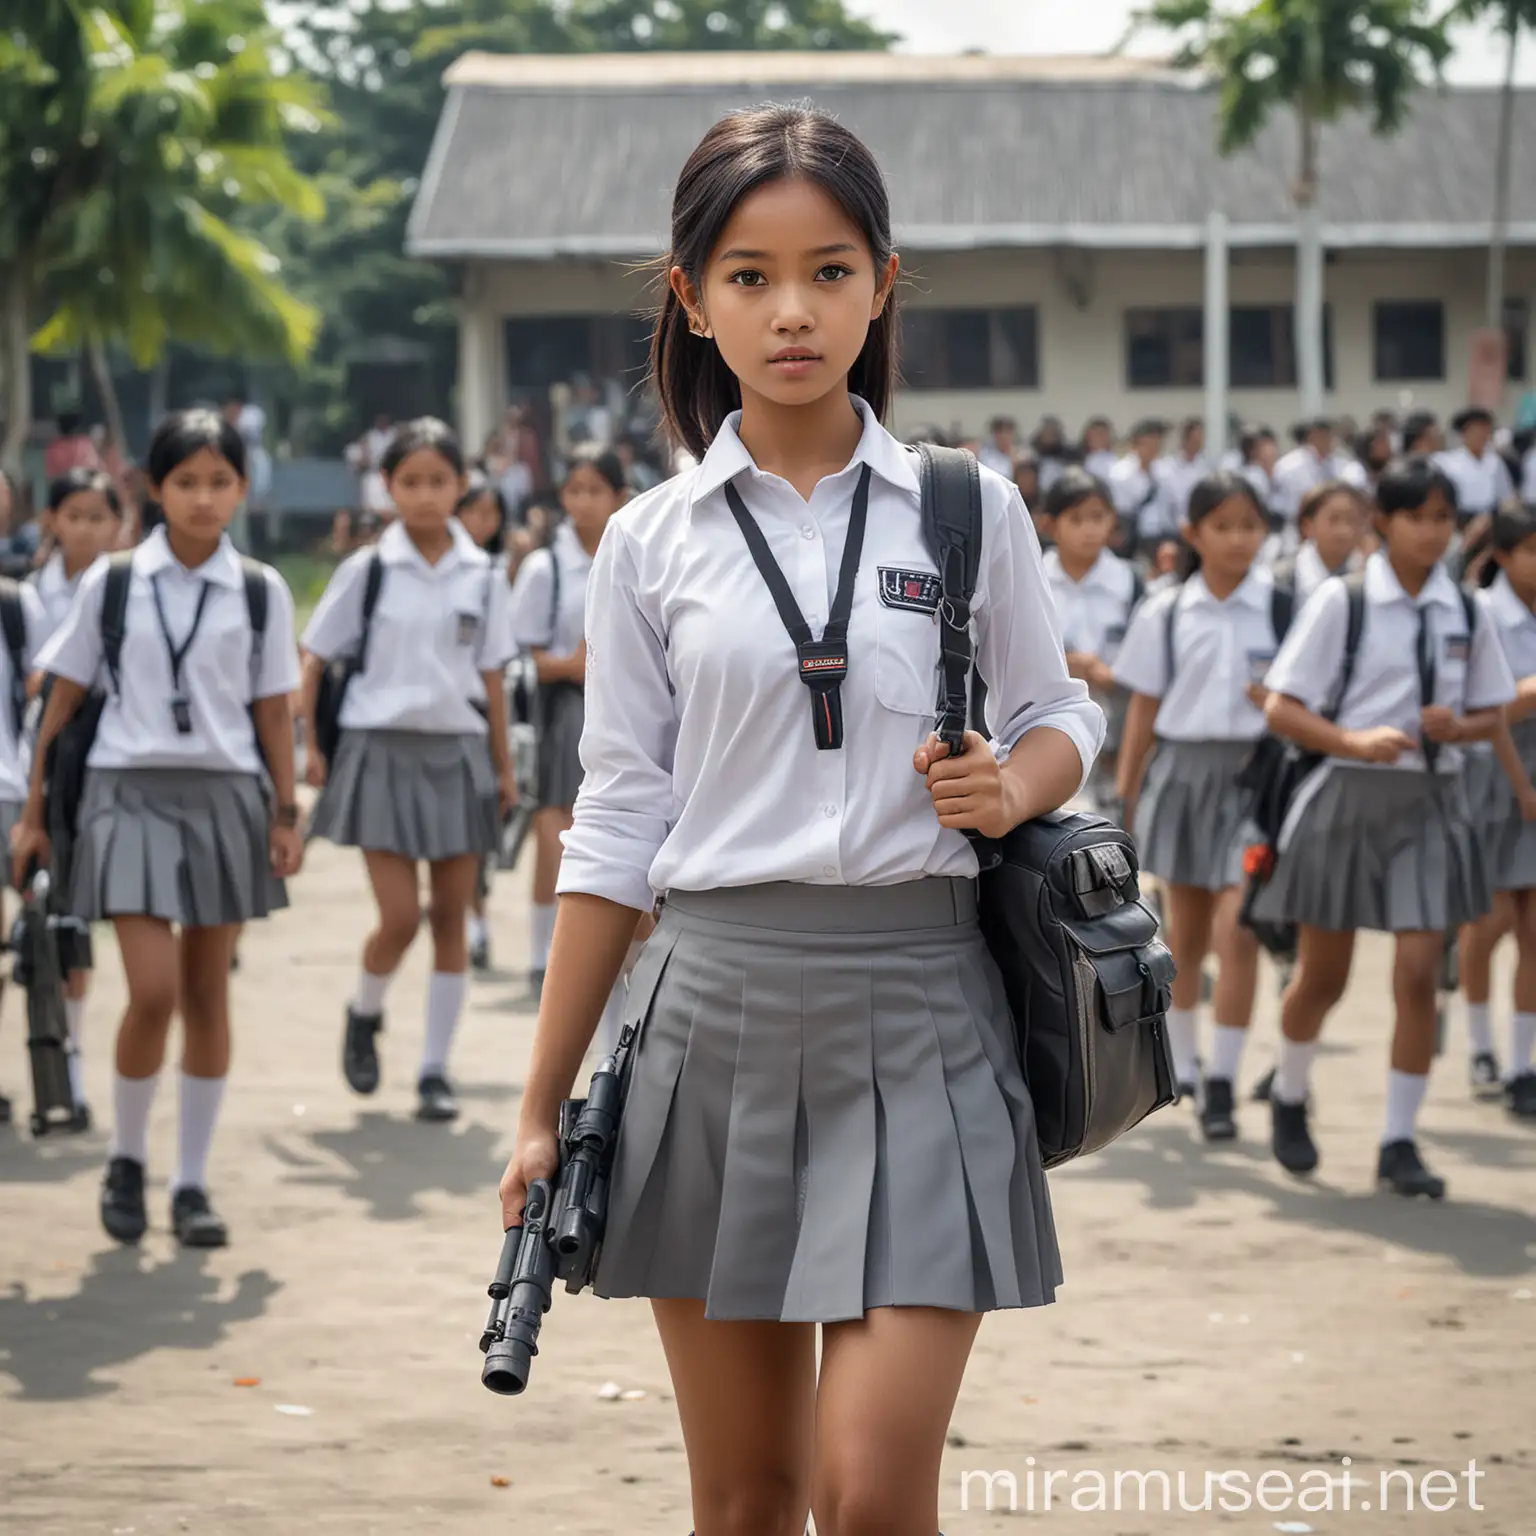 Futuristic Indonesian Schoolgirl with Bazooka in Schoolyard